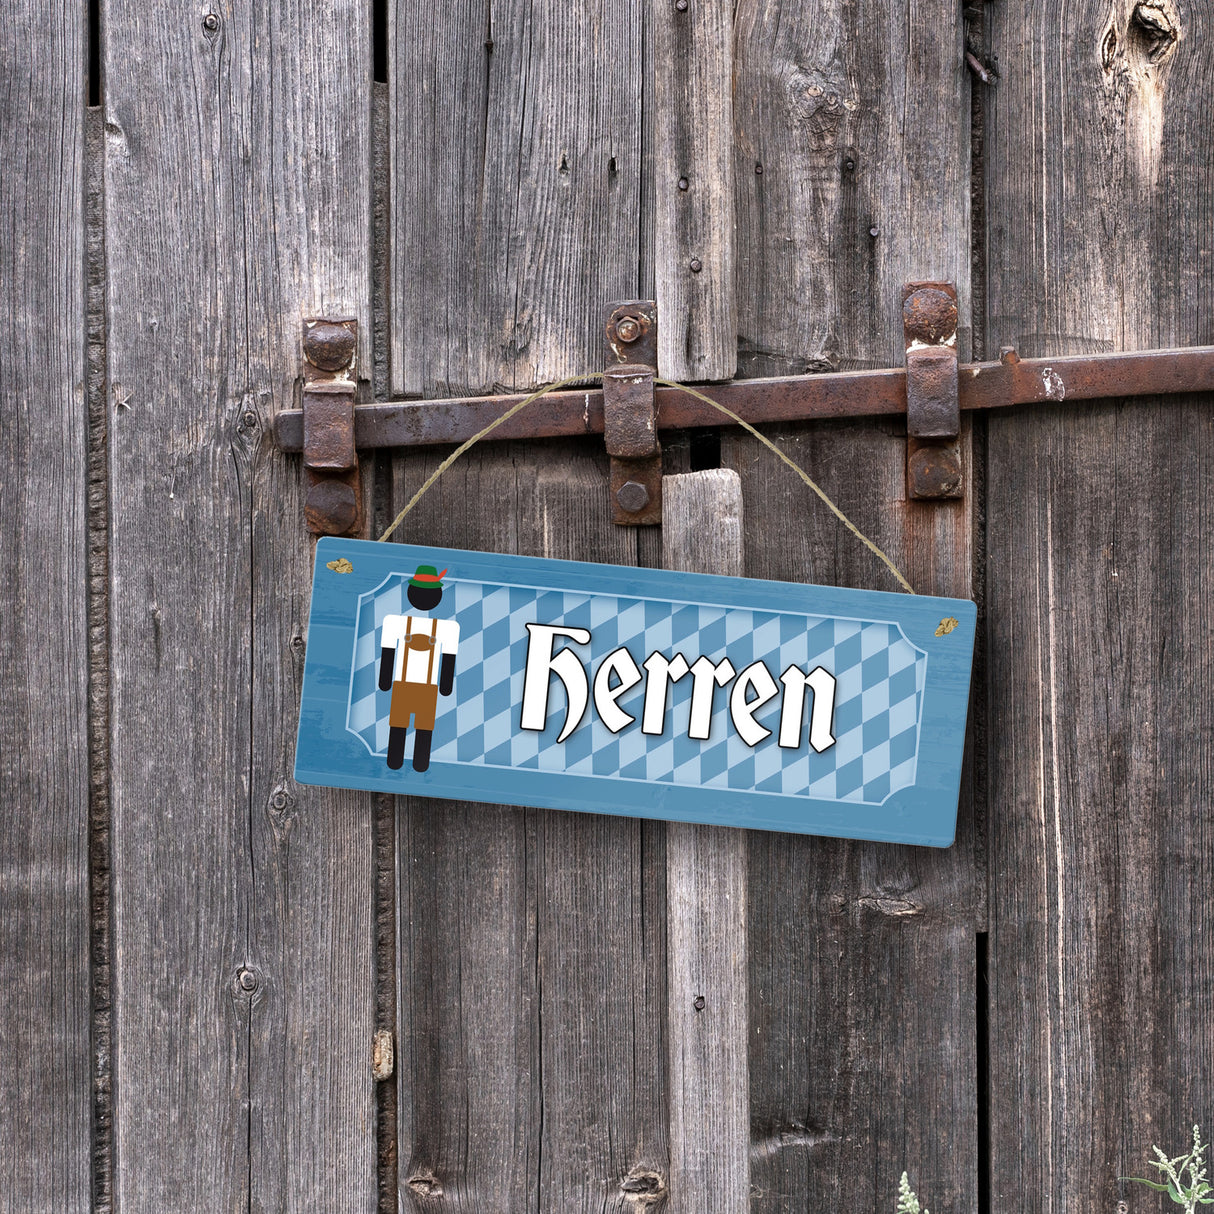 Herren Toilette Metallschild auf bayrische Art mit Lederhosen